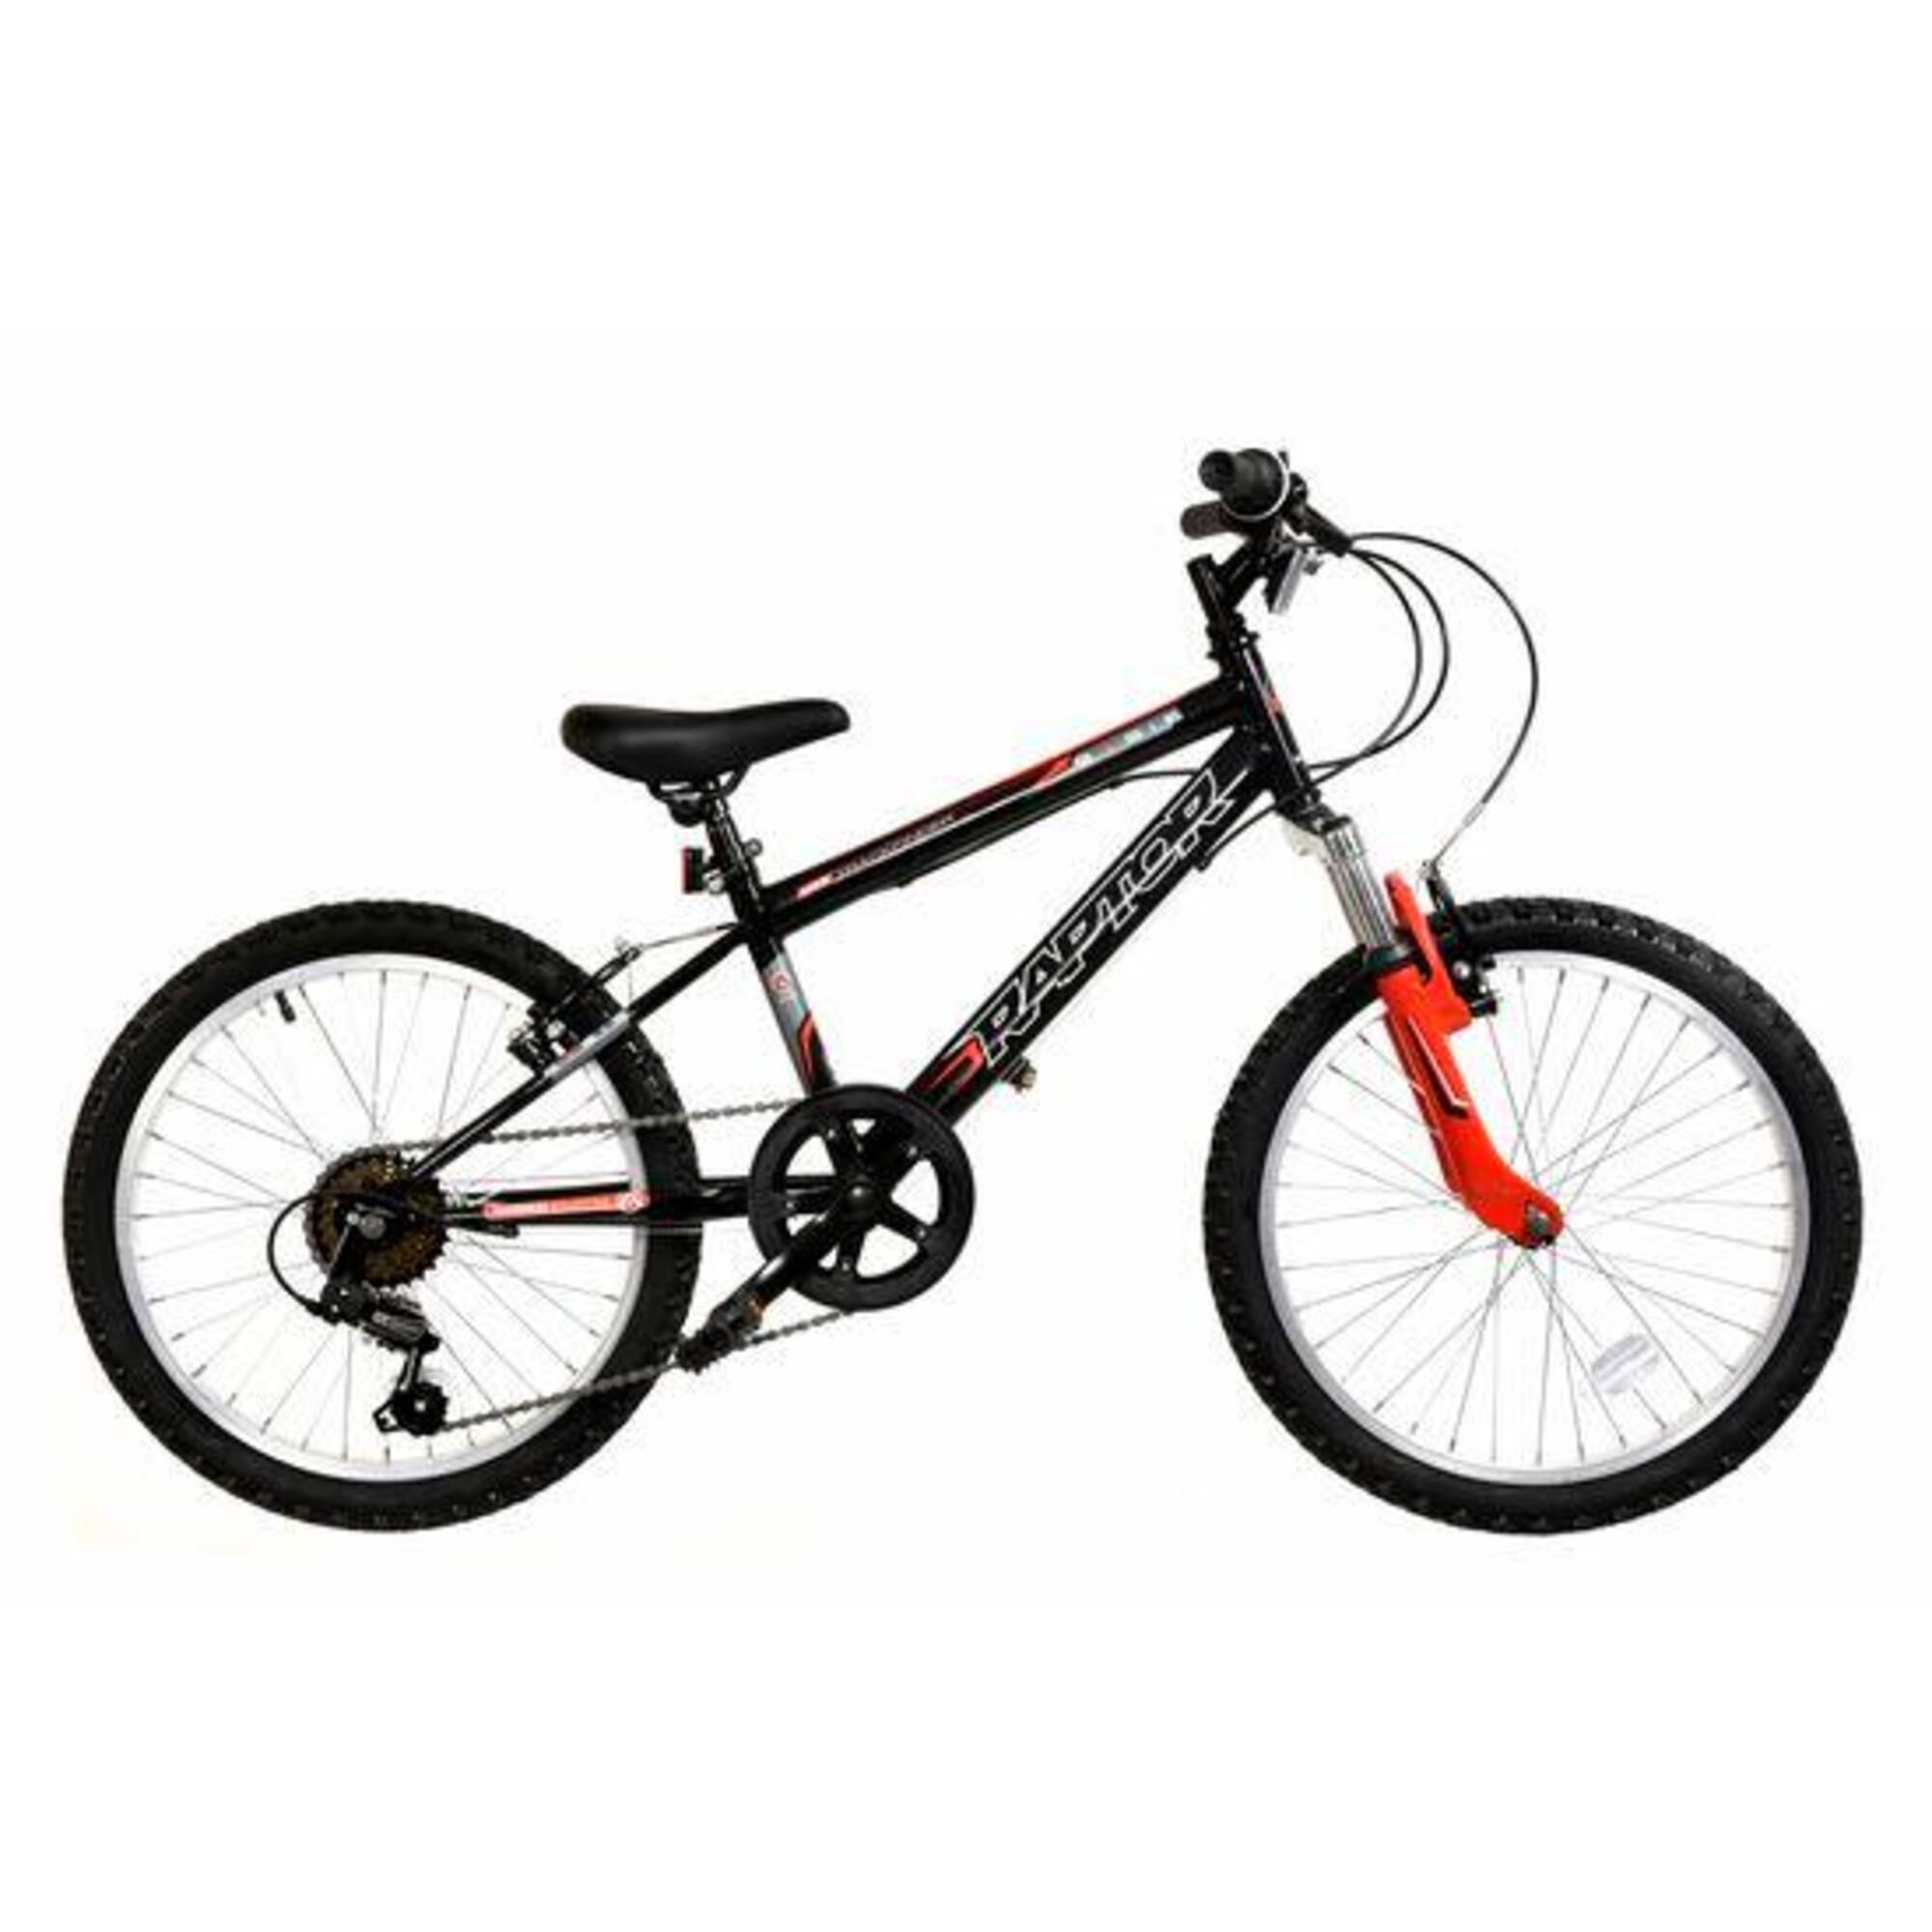 BASIS Basis Raptor Junior Hardtail Mountain Bike 20in Wheel - Gloss Black/Red